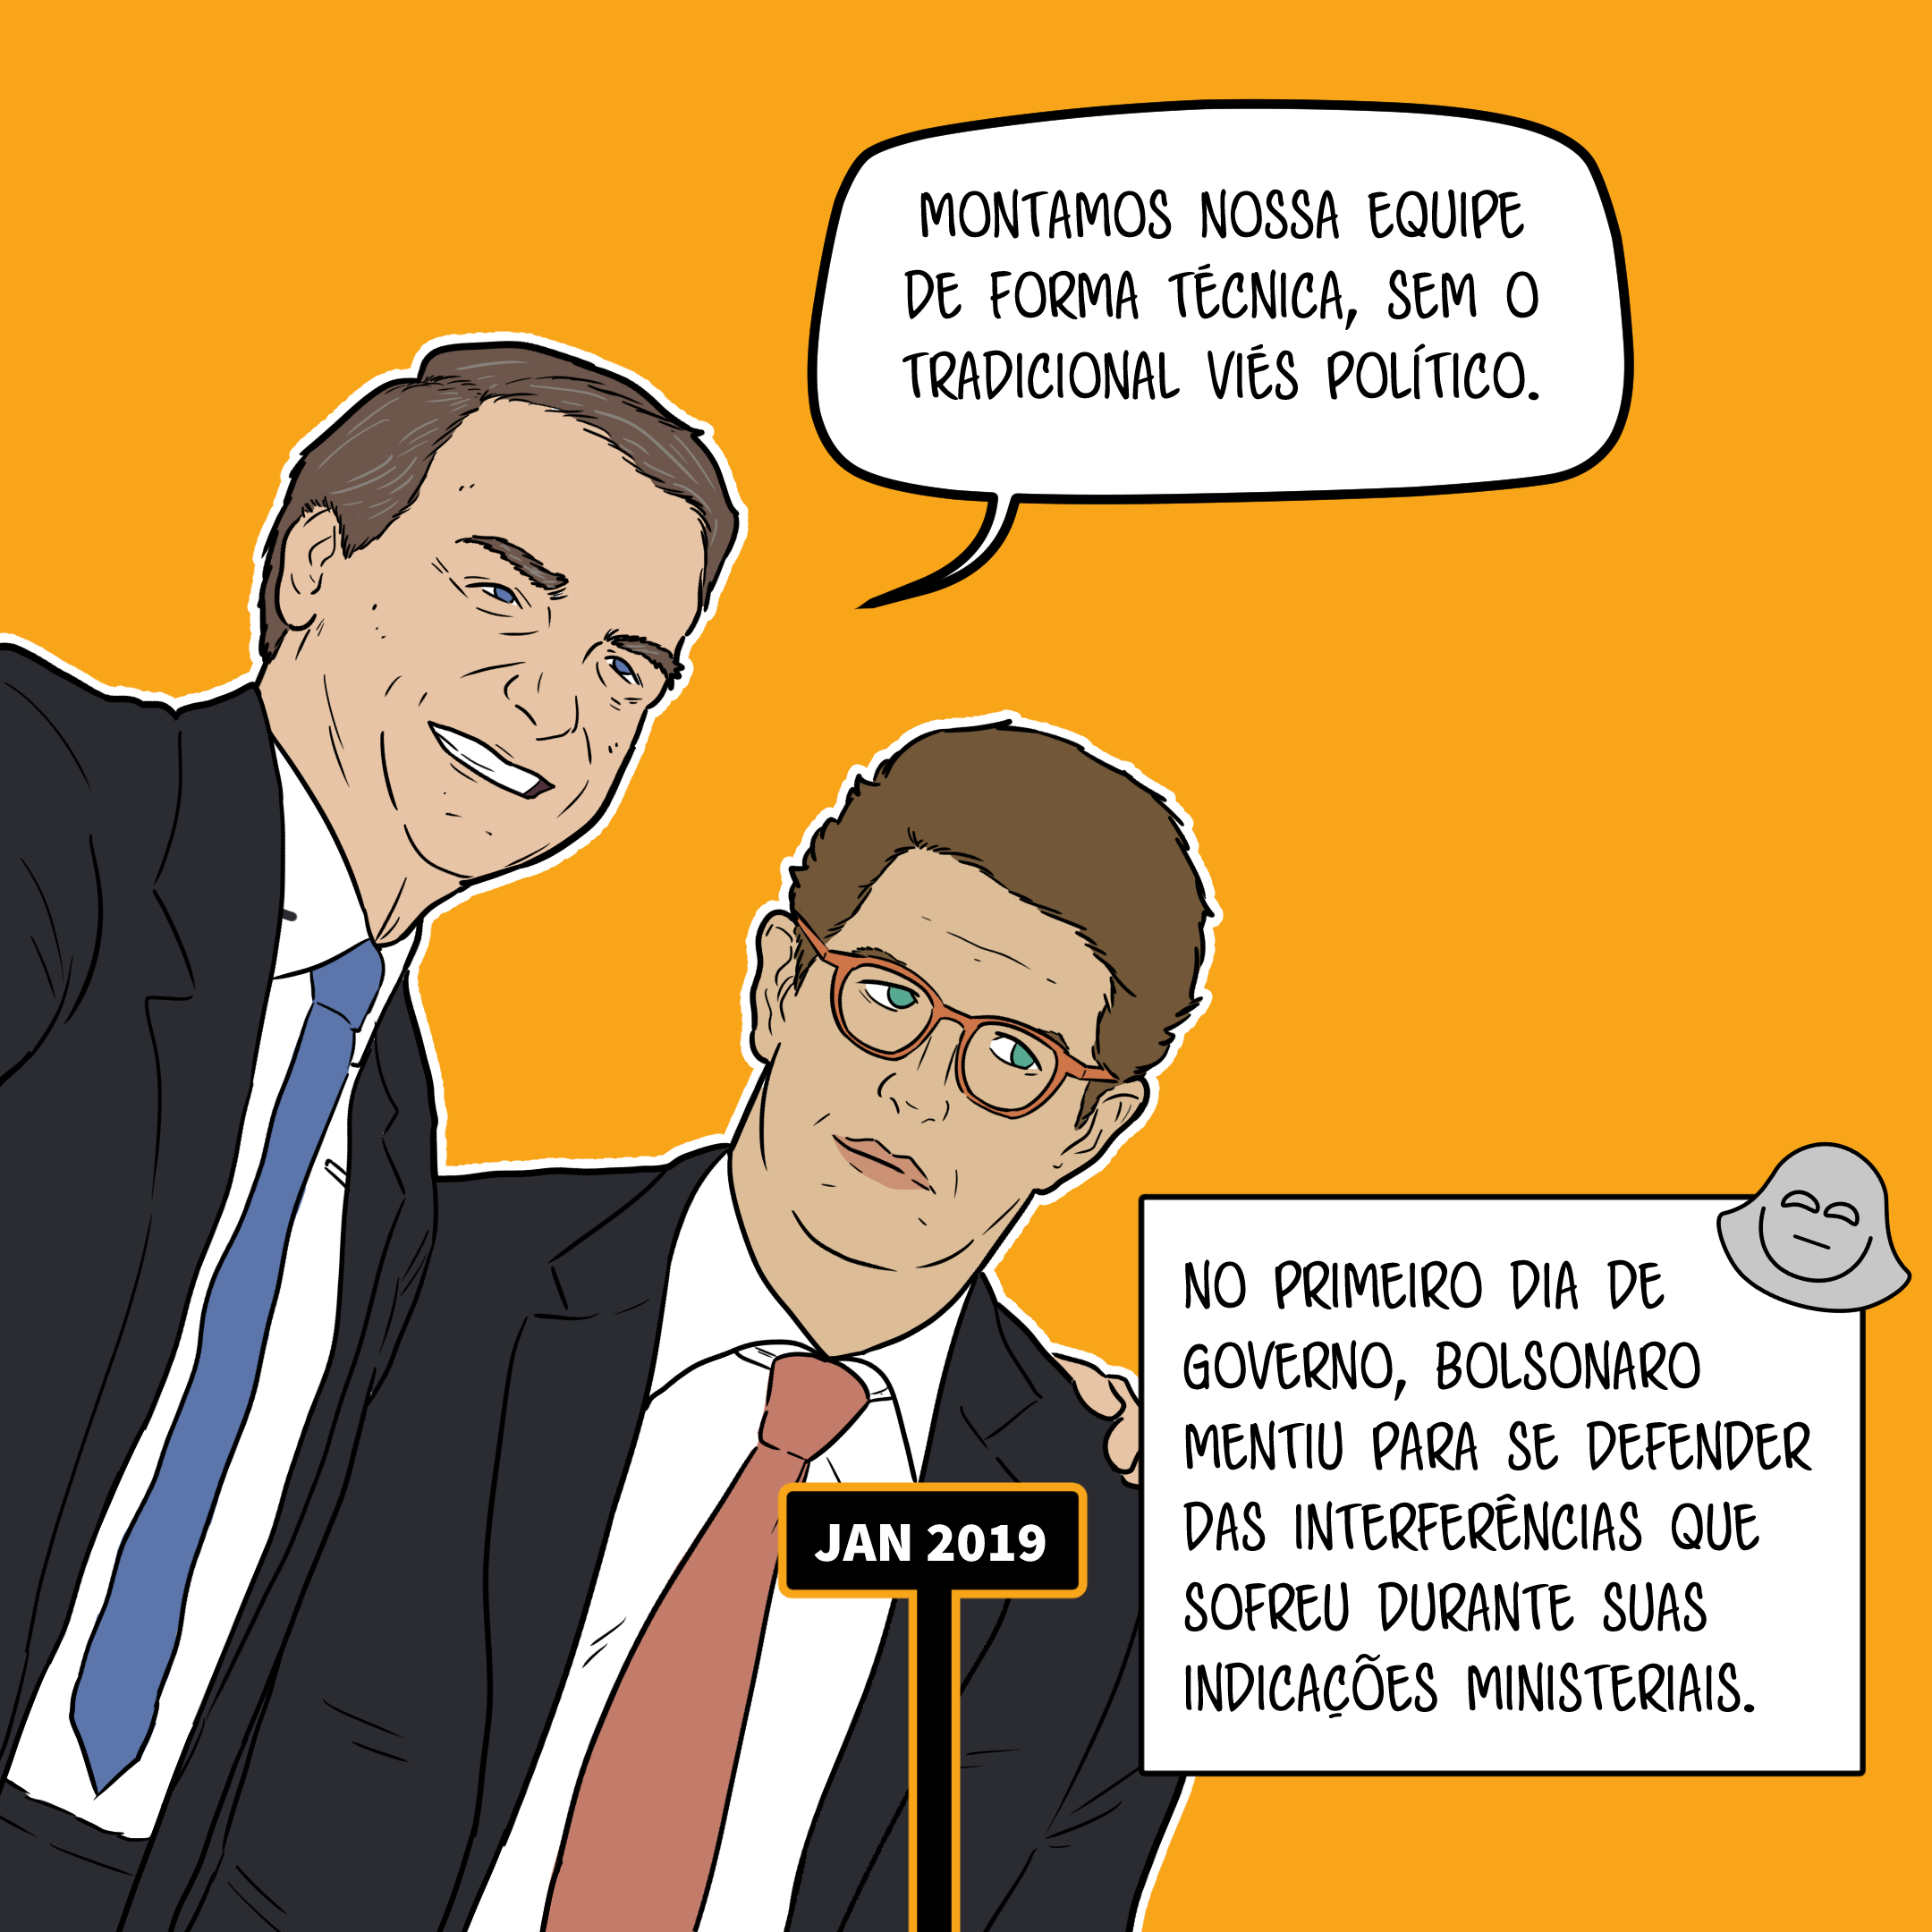 Bolsonaro abraça Ricardo Salles enquanto diz: Montamos nossa equipe de forma técnica, sem o tradicional viés político. Legenda diz: No primeiro dia, Bolsonaro mentiu para se defender das interferências que sofreu durante suas indicações ministeriais.